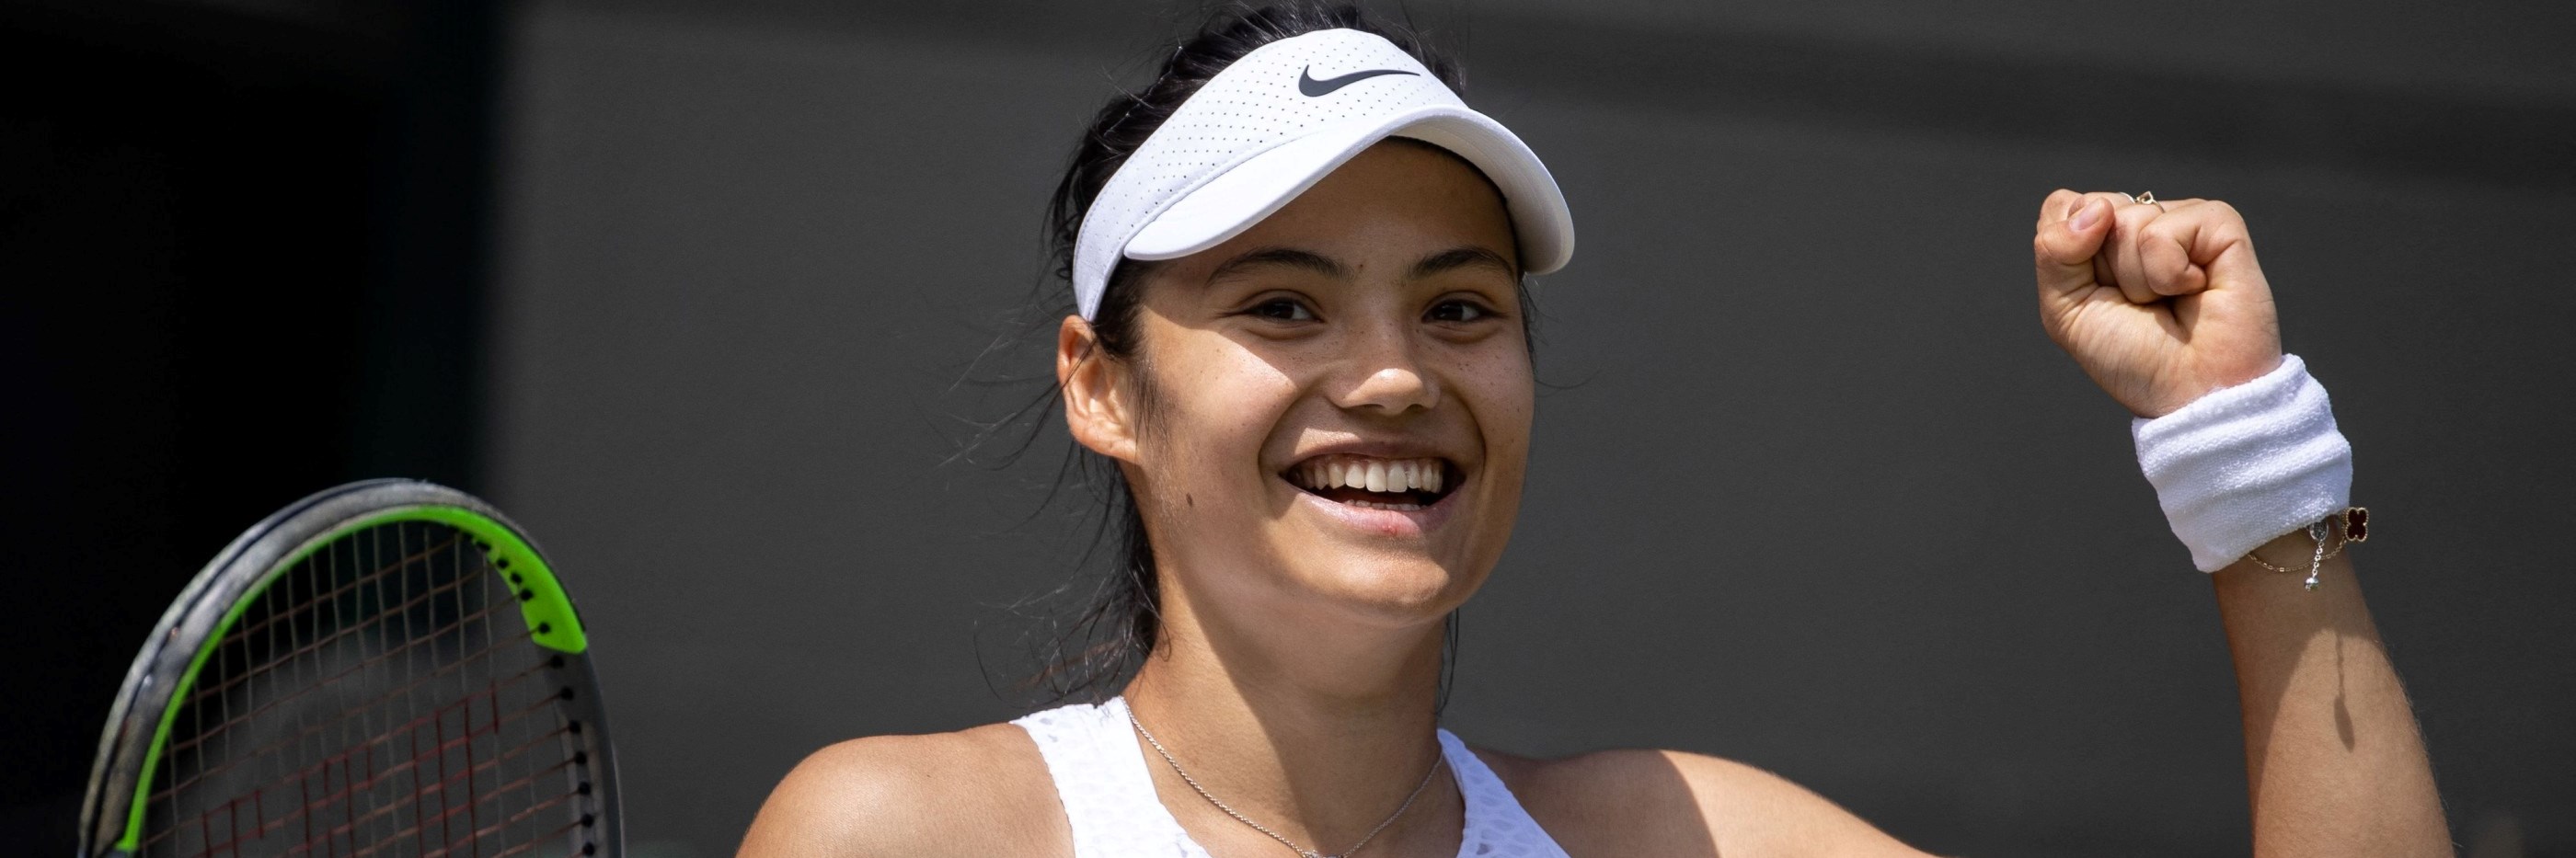 Emma Raducanu smiling at Wimbledon in 2021